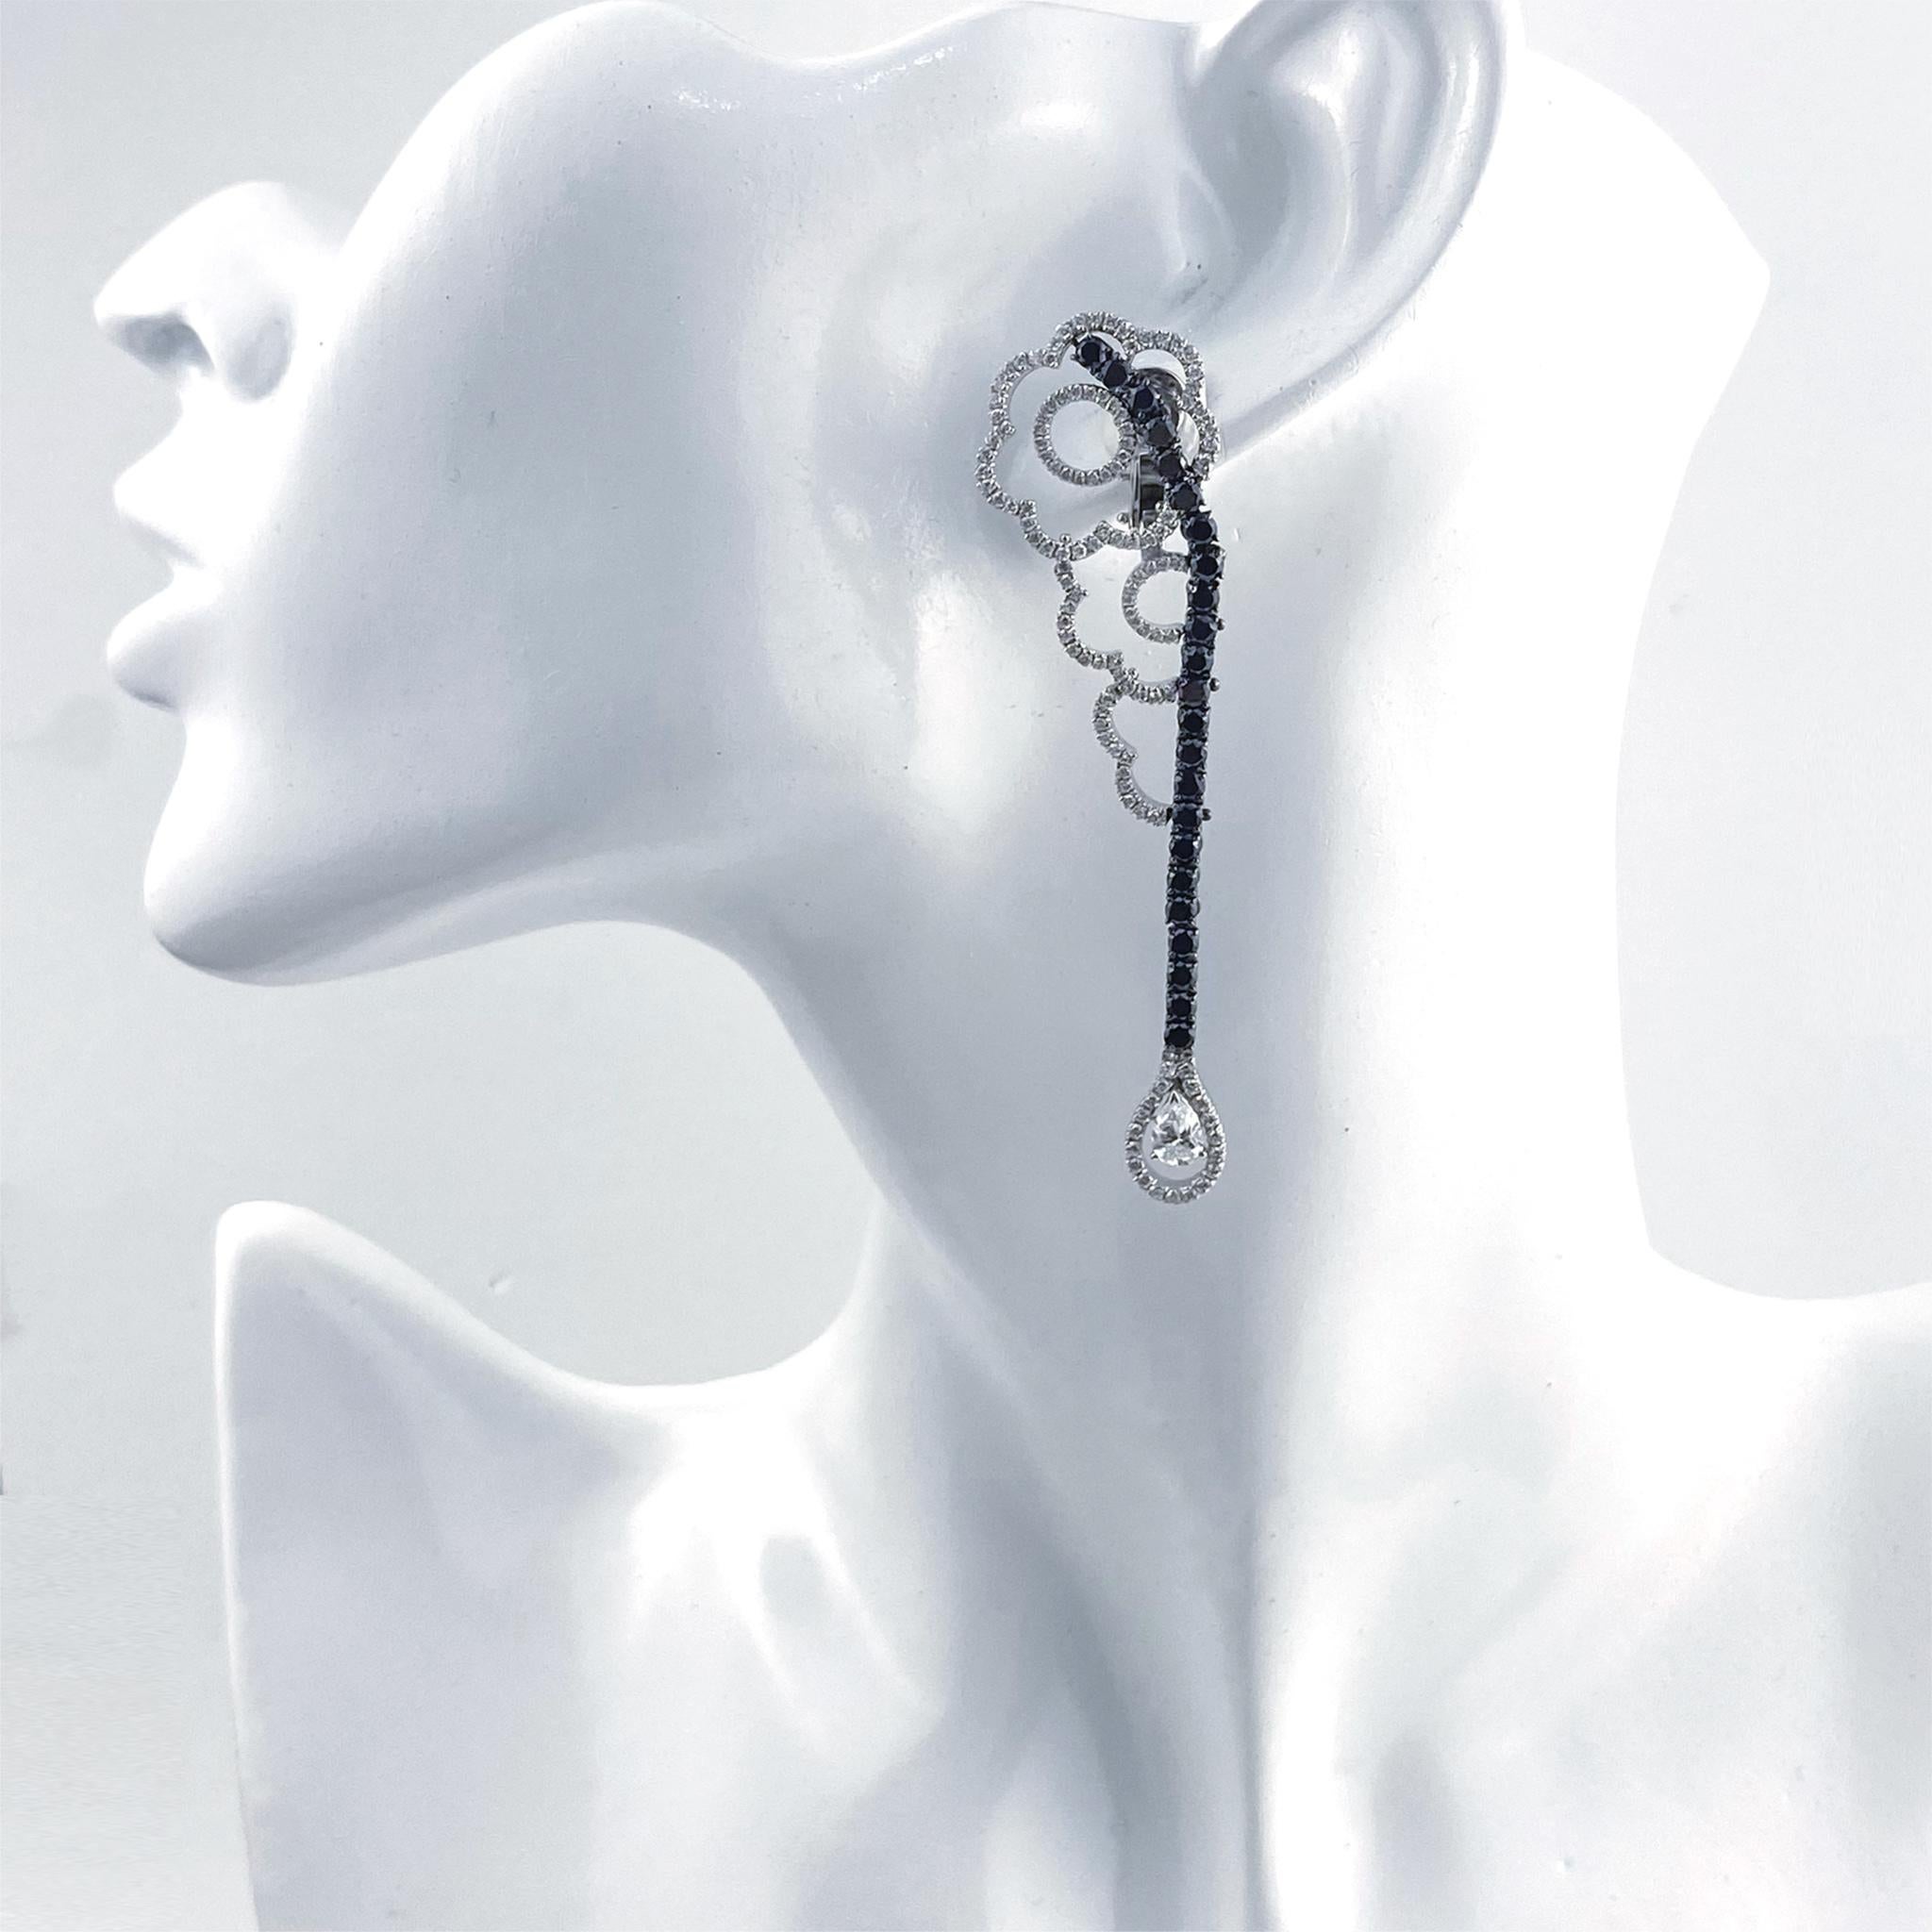 Brilliant Cut Stefan Hafner 18k White Gold 6.11ctw Diamond Earrings For Sale